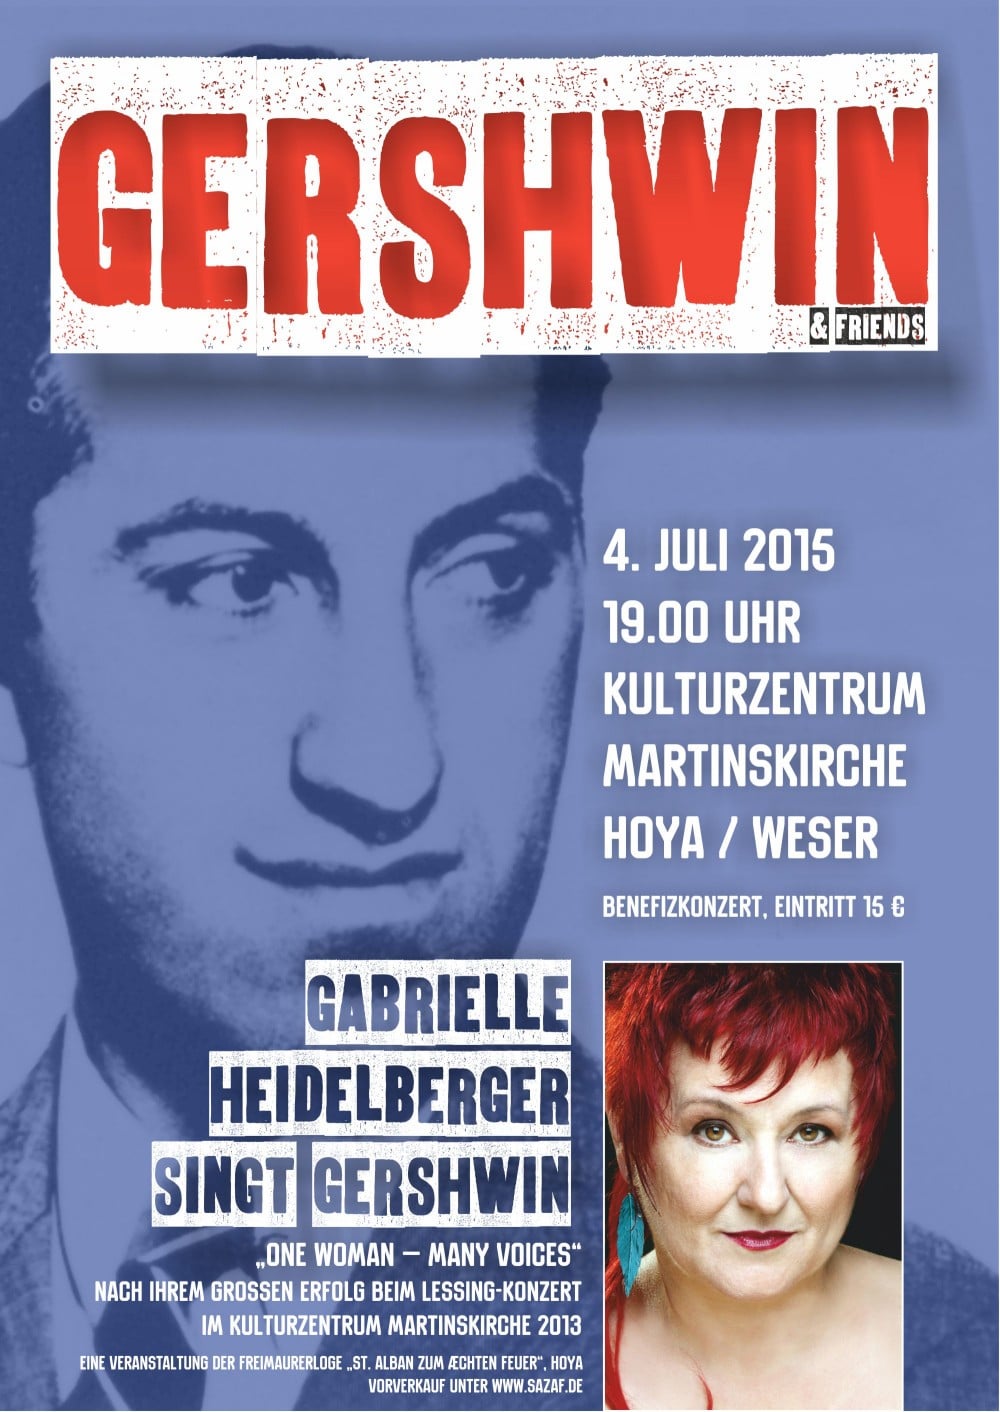 Plakat für das Gershwin-Konzert